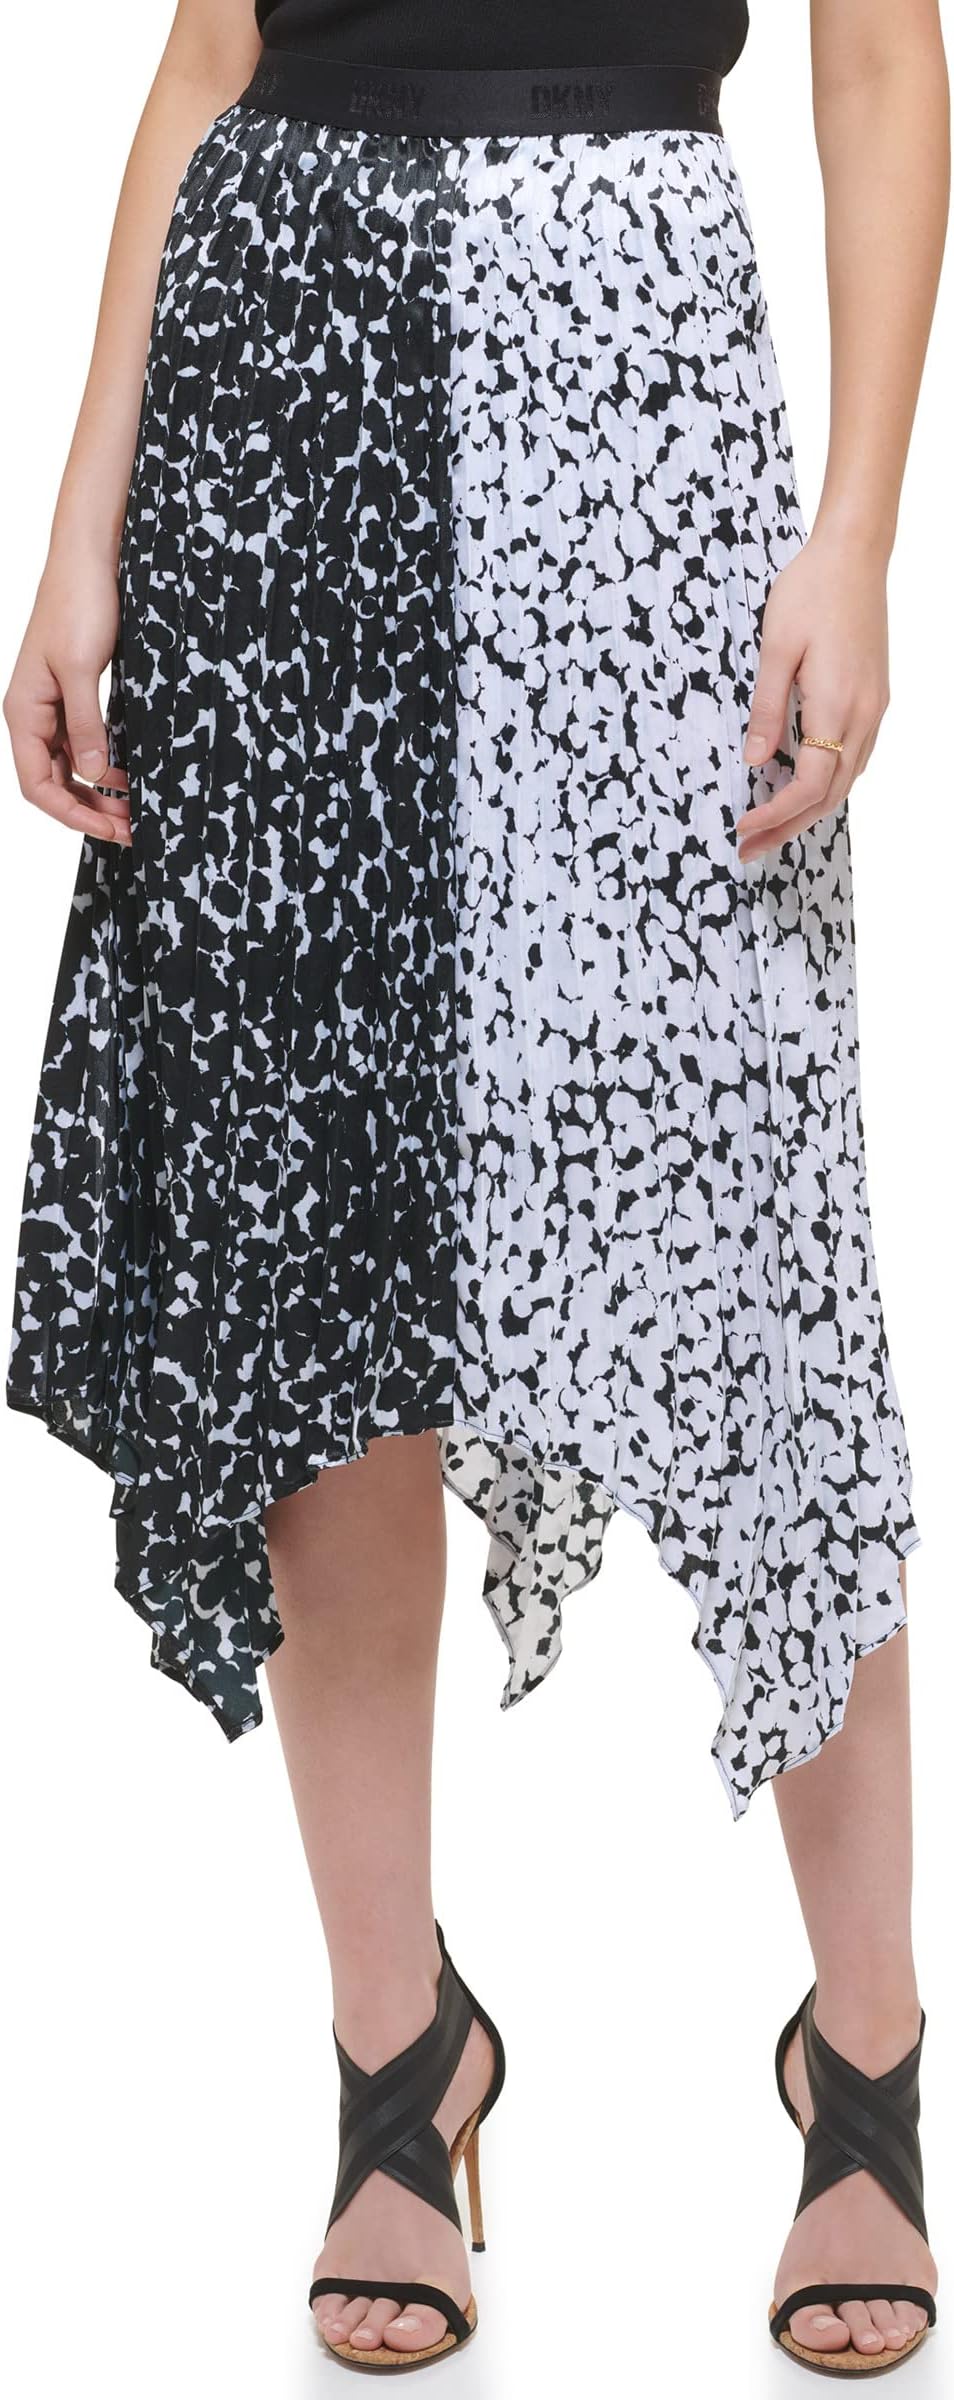 Асимметричная юбка с цветными блоками и асимметричным принтом без застежки DKNY, цвет Black/White/White/Black